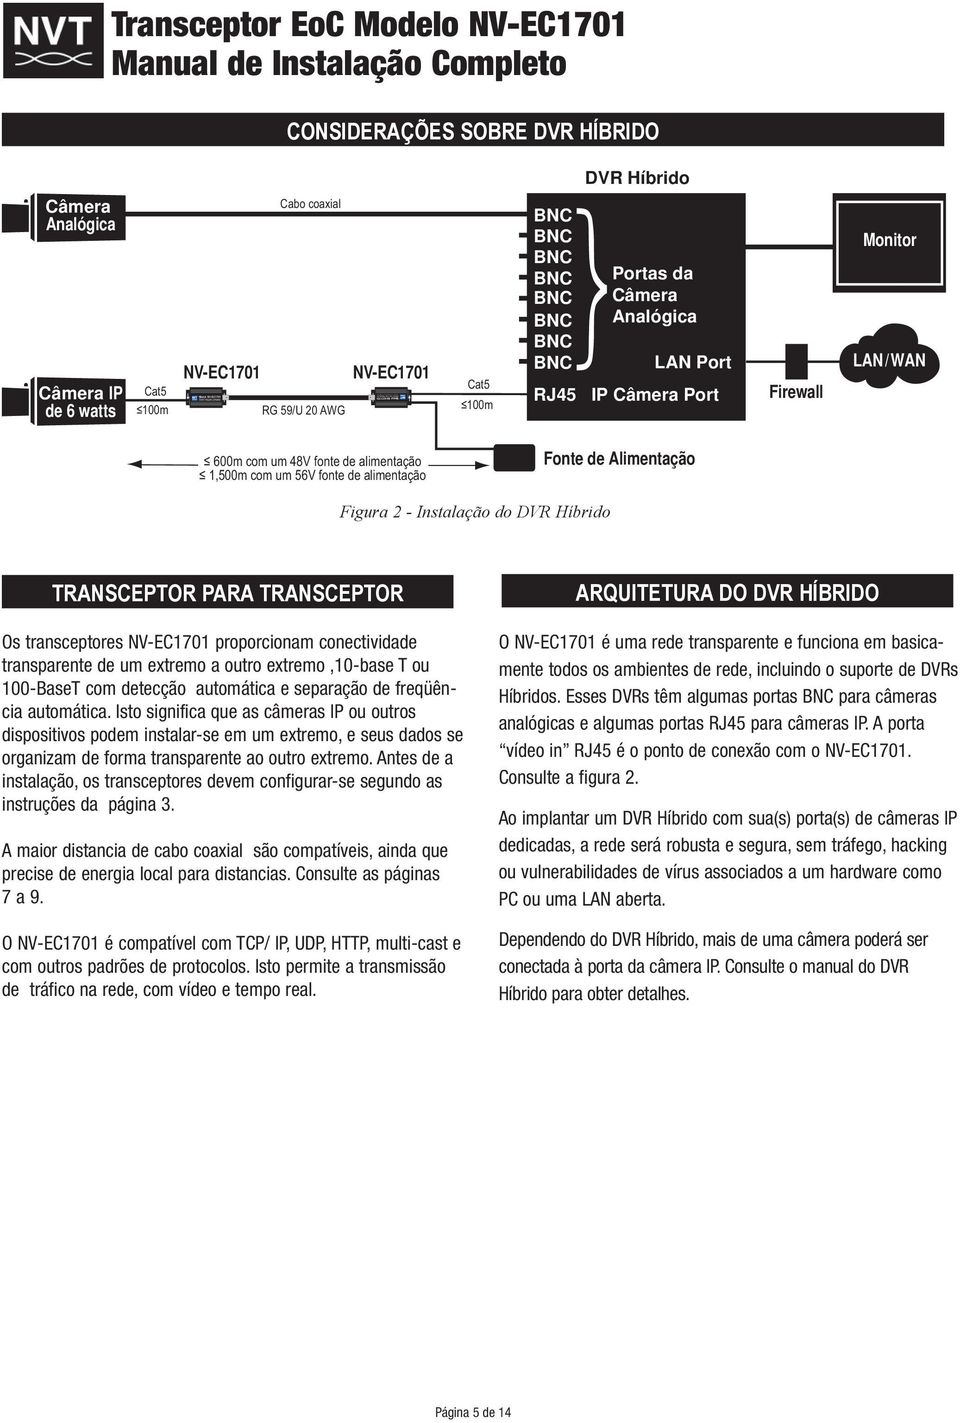 Instalação do DVR Híbrido TRANSCEPTOR PARA TRANSCEPTOR Os transceptores NV-EC1701 proporcionam conectividade transparente de um extremo a outro extremo,10-base T ou 100-BaseT com detecção automática